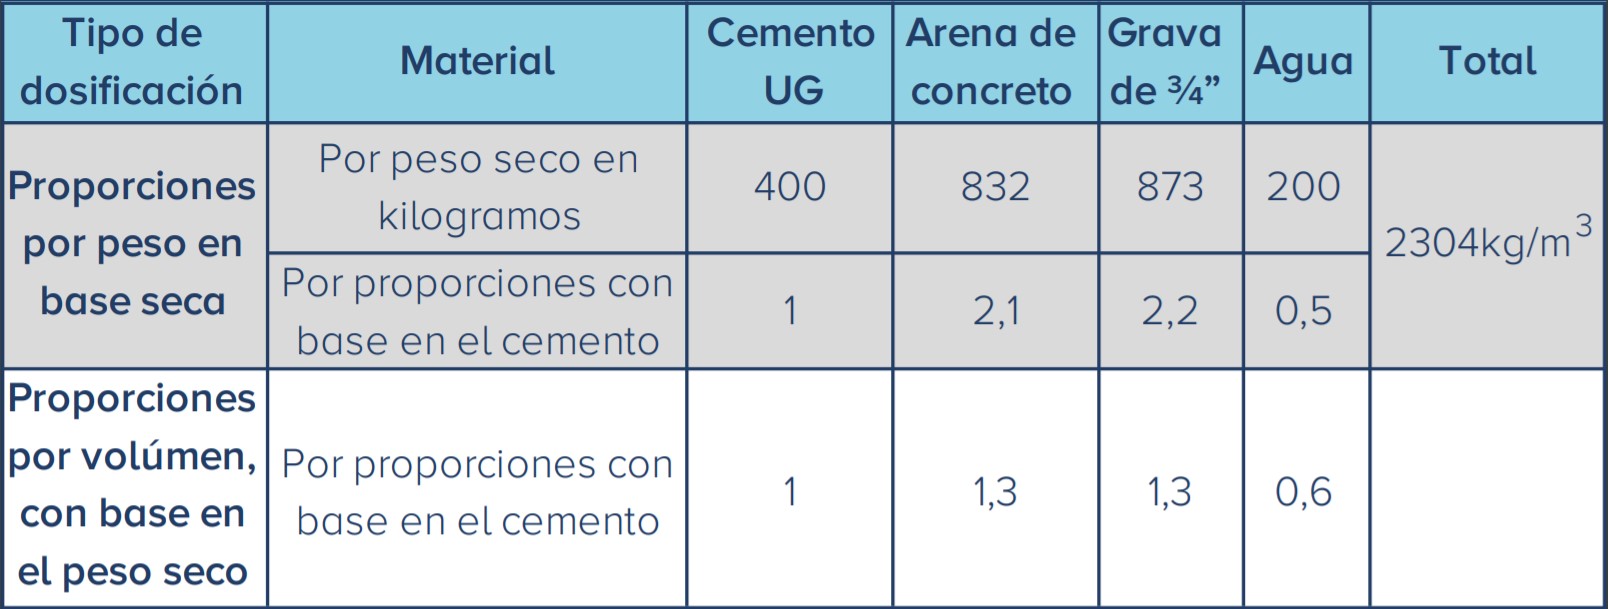 Tabla de concretos y morteros de Cemento Alión para uso general de 4000psi o 28MPa